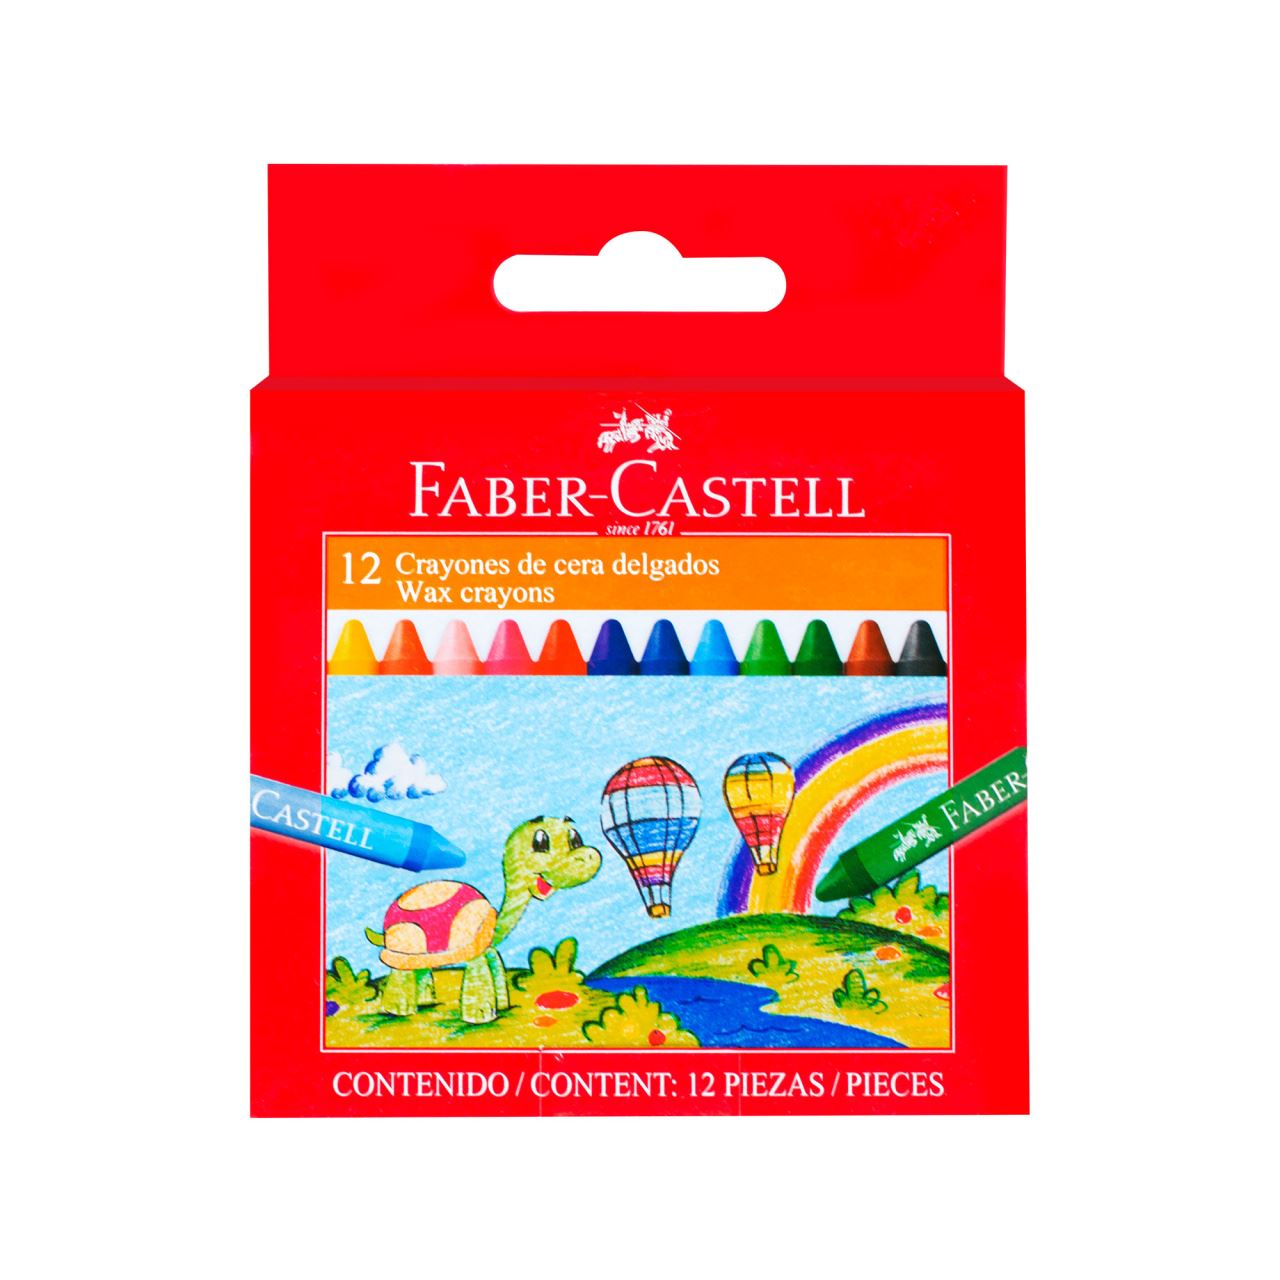 Faber-Castell - Crayones de cera delgados estuche x12